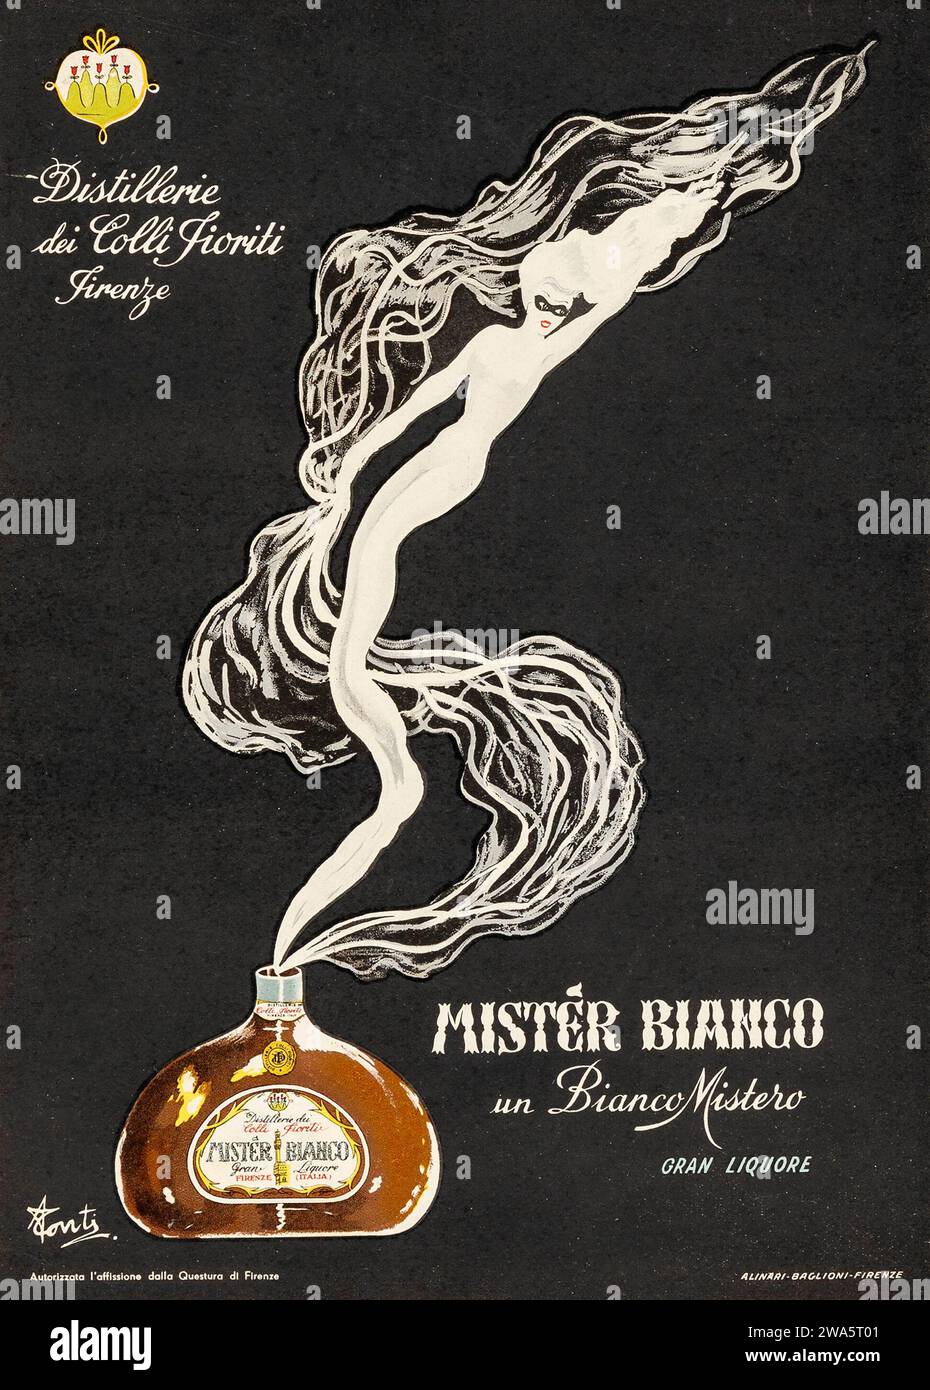 Mister Bianco un Bianco Mistero Gran Liquore (années 1930) affiche publicitaire Banque D'Images